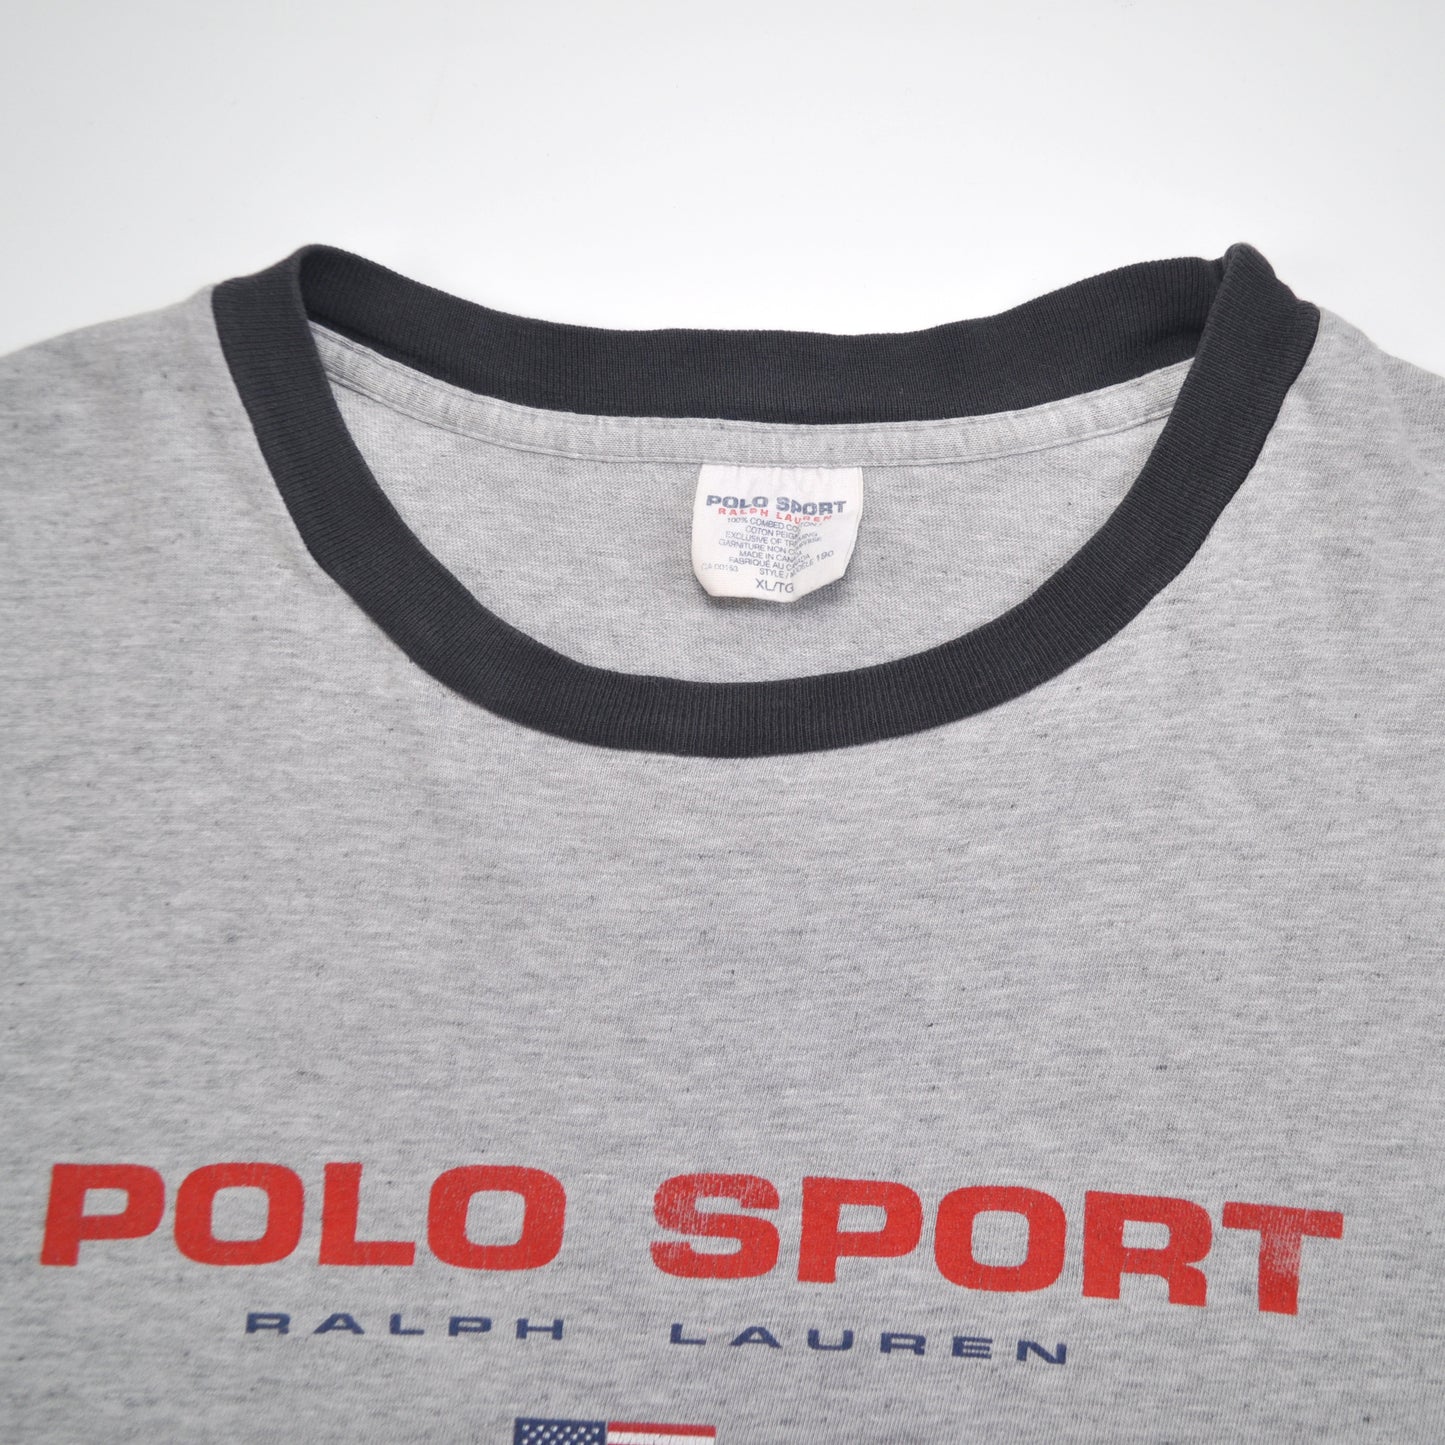 Polo Sport - XL